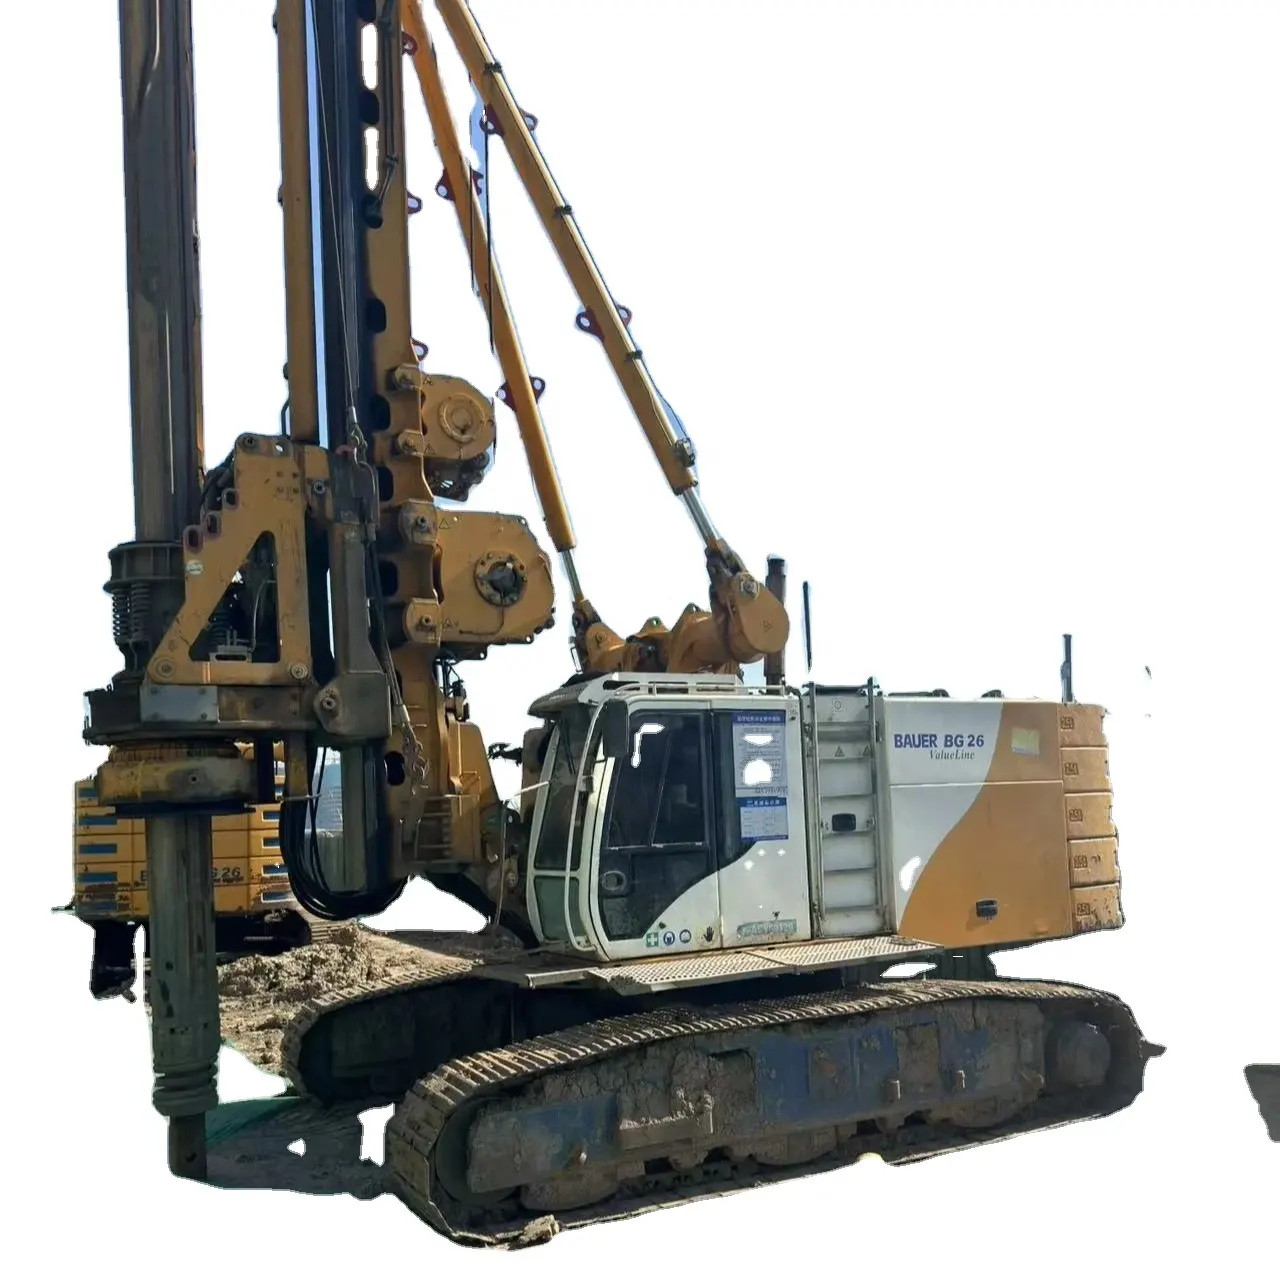 ماكينة حفر وصخور تجارية Uesd BAUER BG26 منصة حفر عام 2017